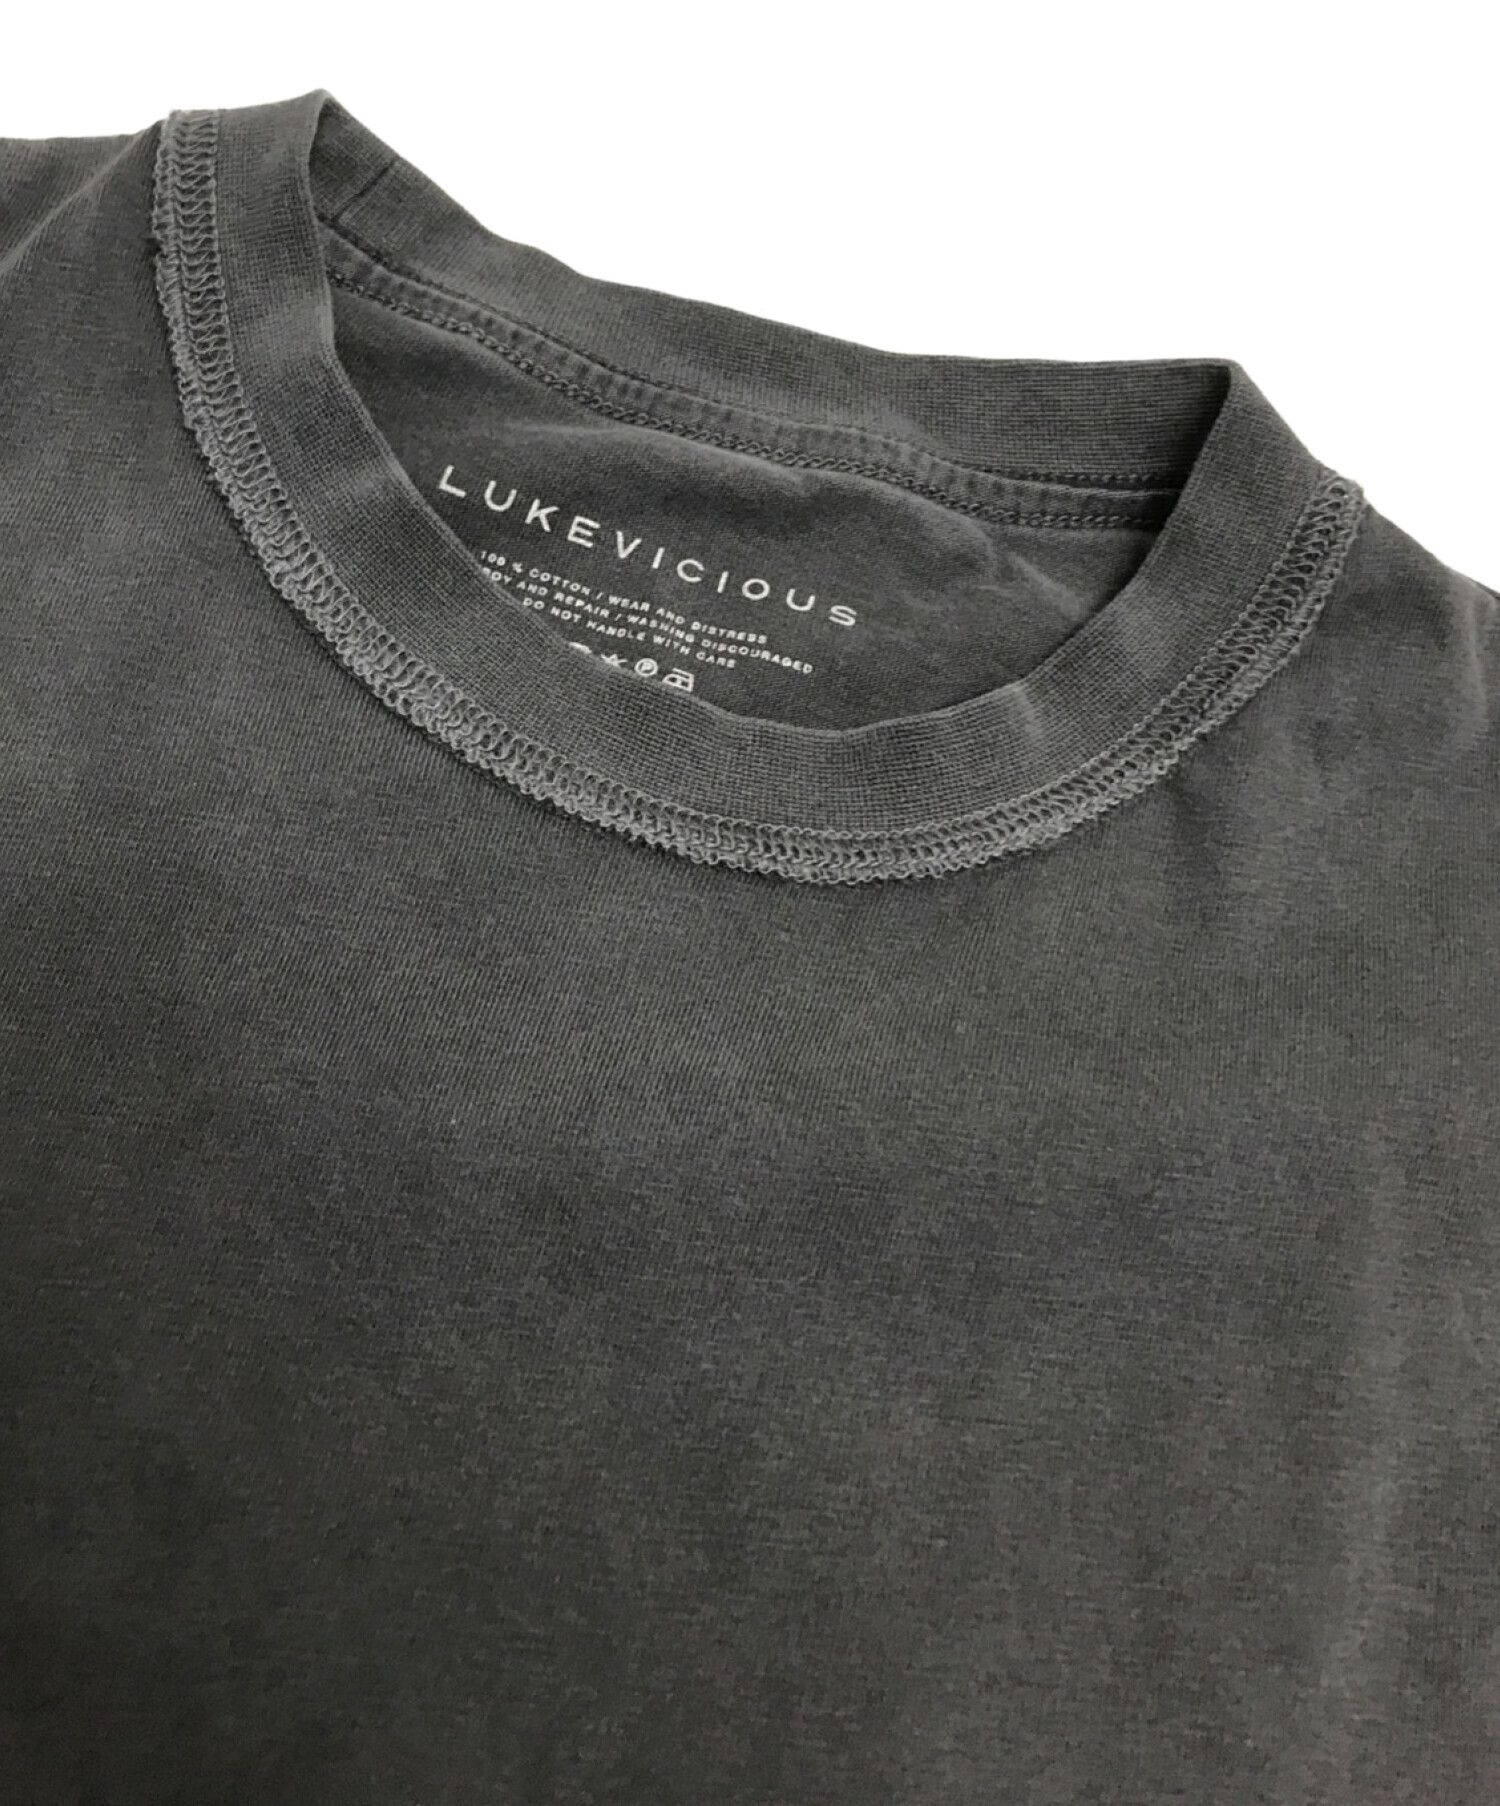 LUKEVICIOUS (ルークヴィシャス) インサイドアウトTシャツ ブラック サイズ:XS/S